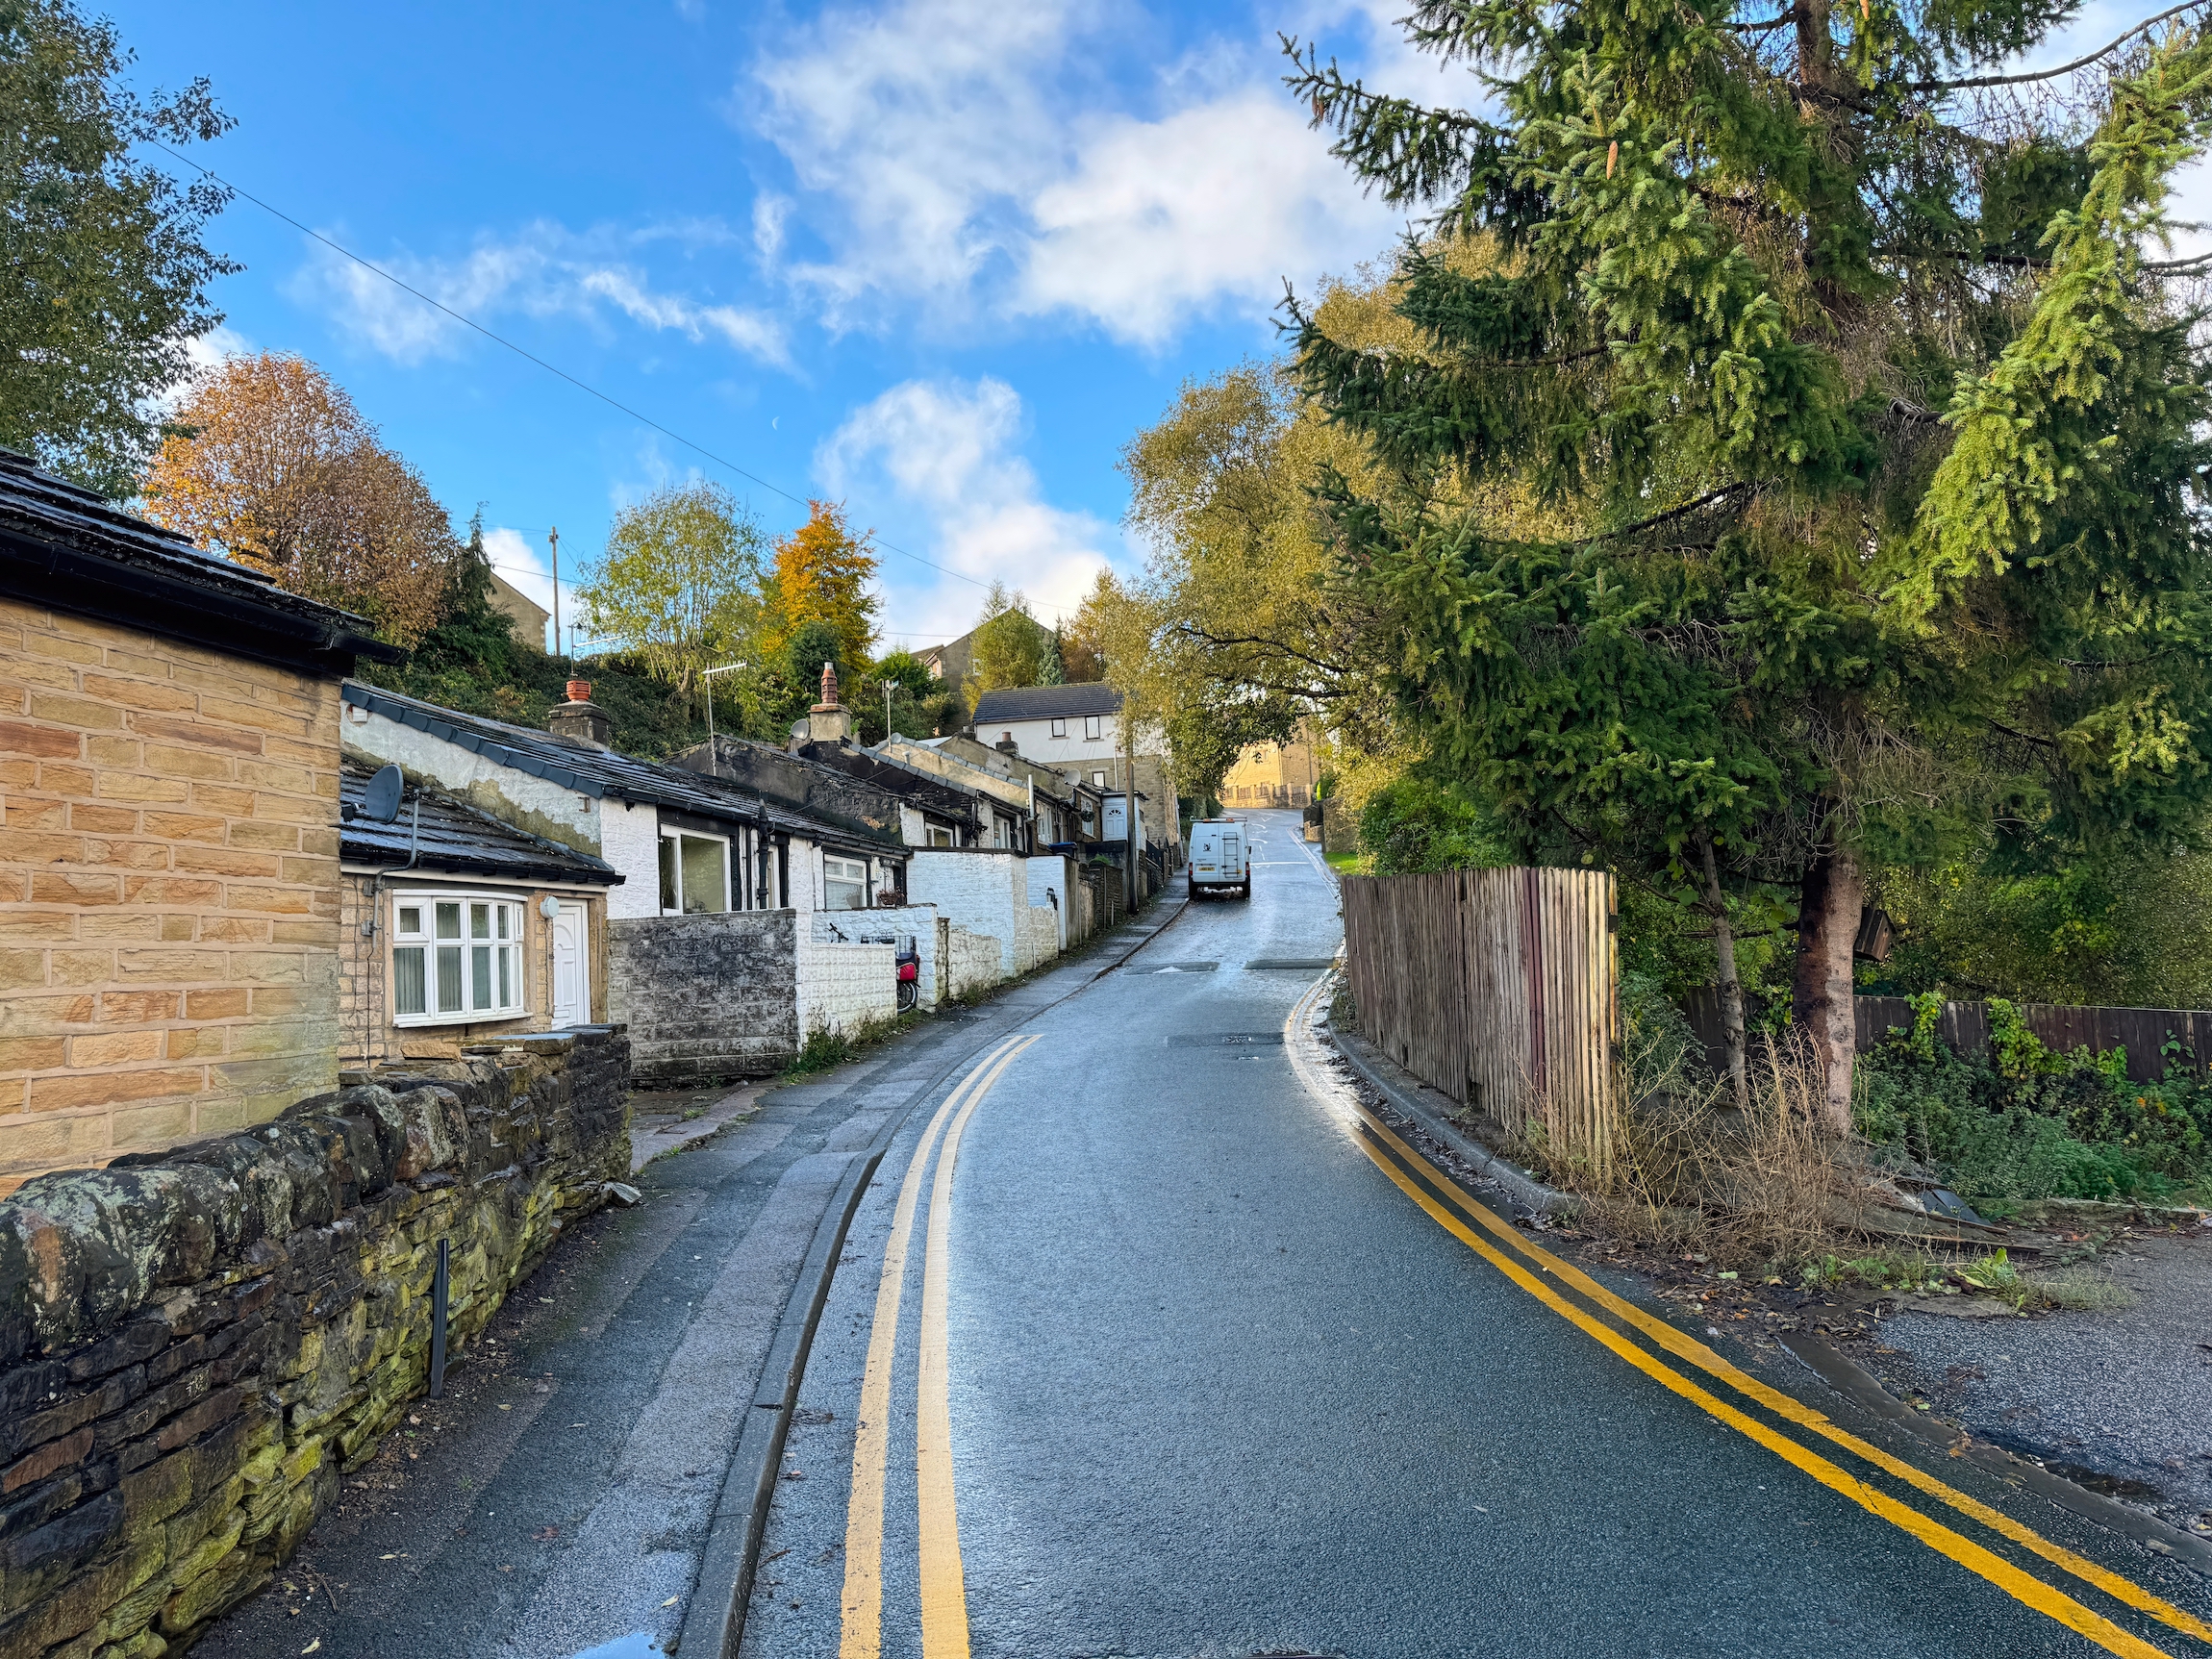 Haycliffe Lane, z kamiennymi ścianami, małymi domkami, starymi drzewami i domami, w pochmurny dzień w Bradford, Wielka Brytania